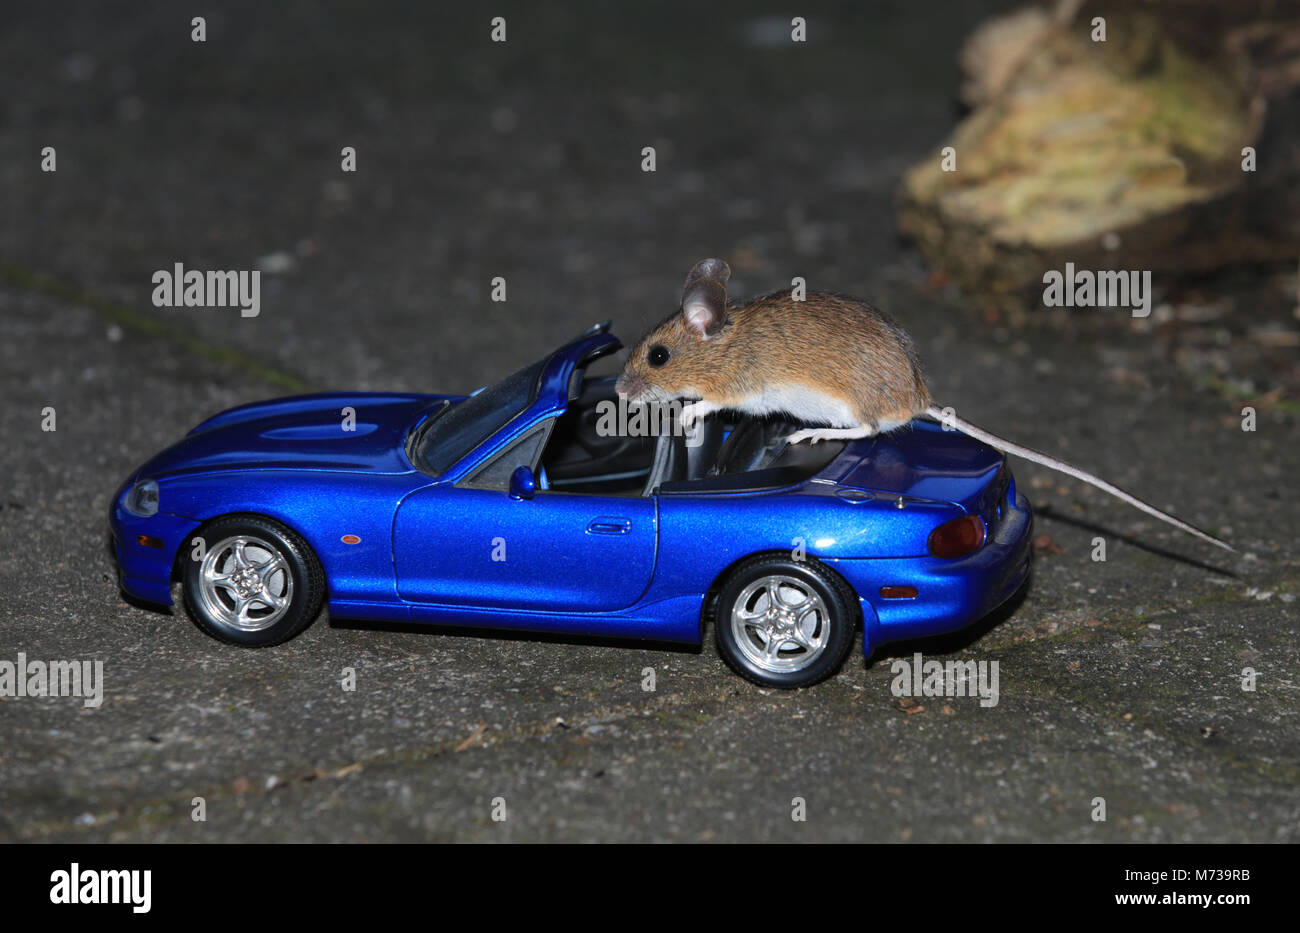 Une souris en bois (Apodemus sylvaticus) debout sur un modèle de voiture dans un jardin anglais. Banque D'Images